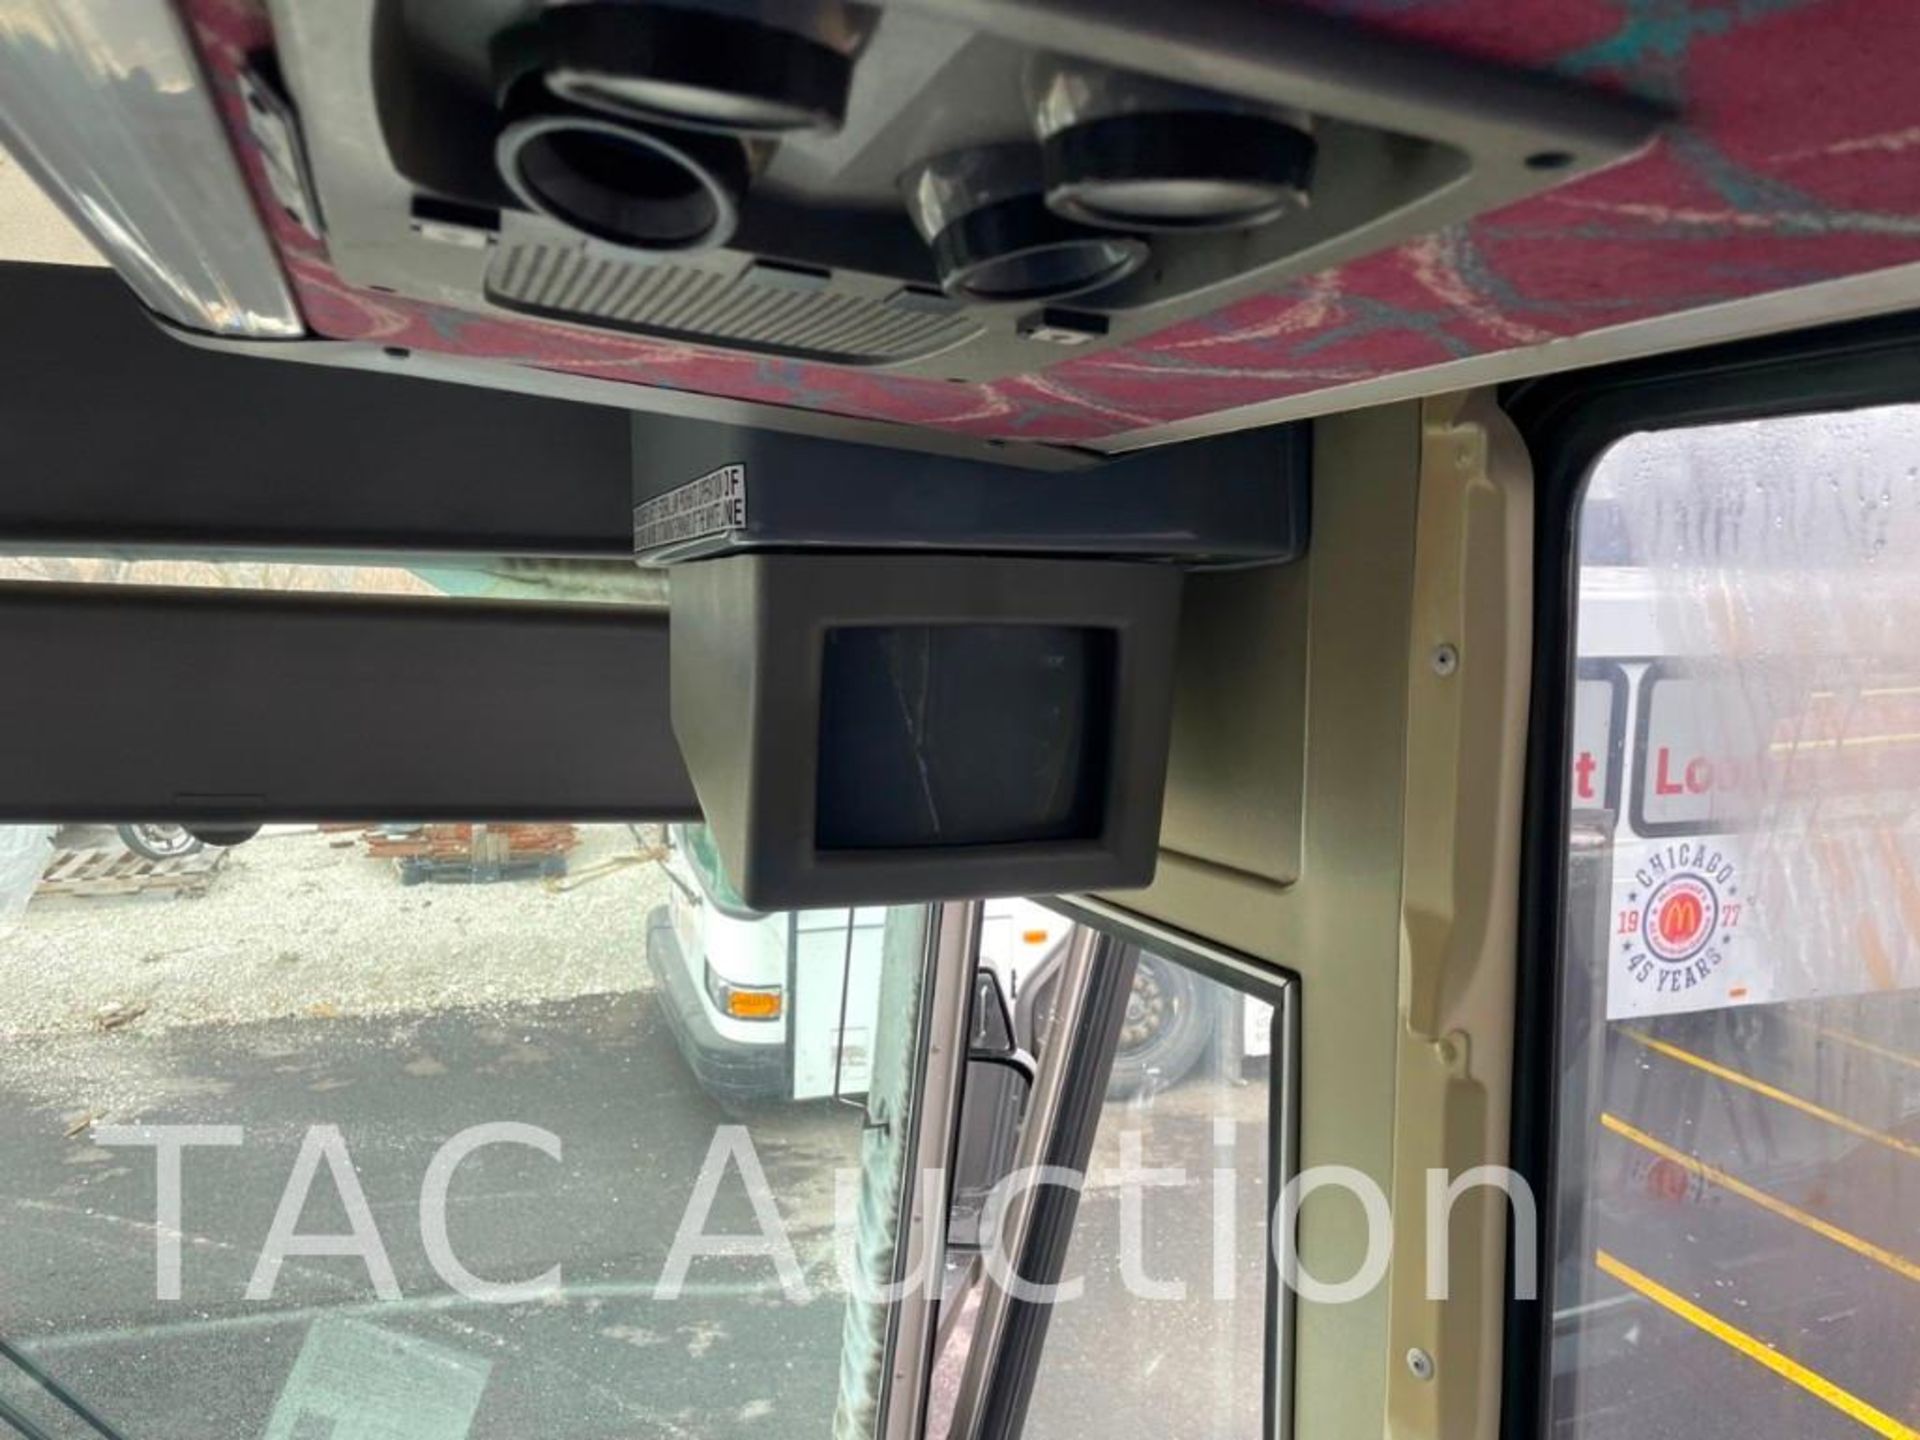 1997 MCI 102-DL3 (45) Passenger Coach Bus - Image 37 of 99